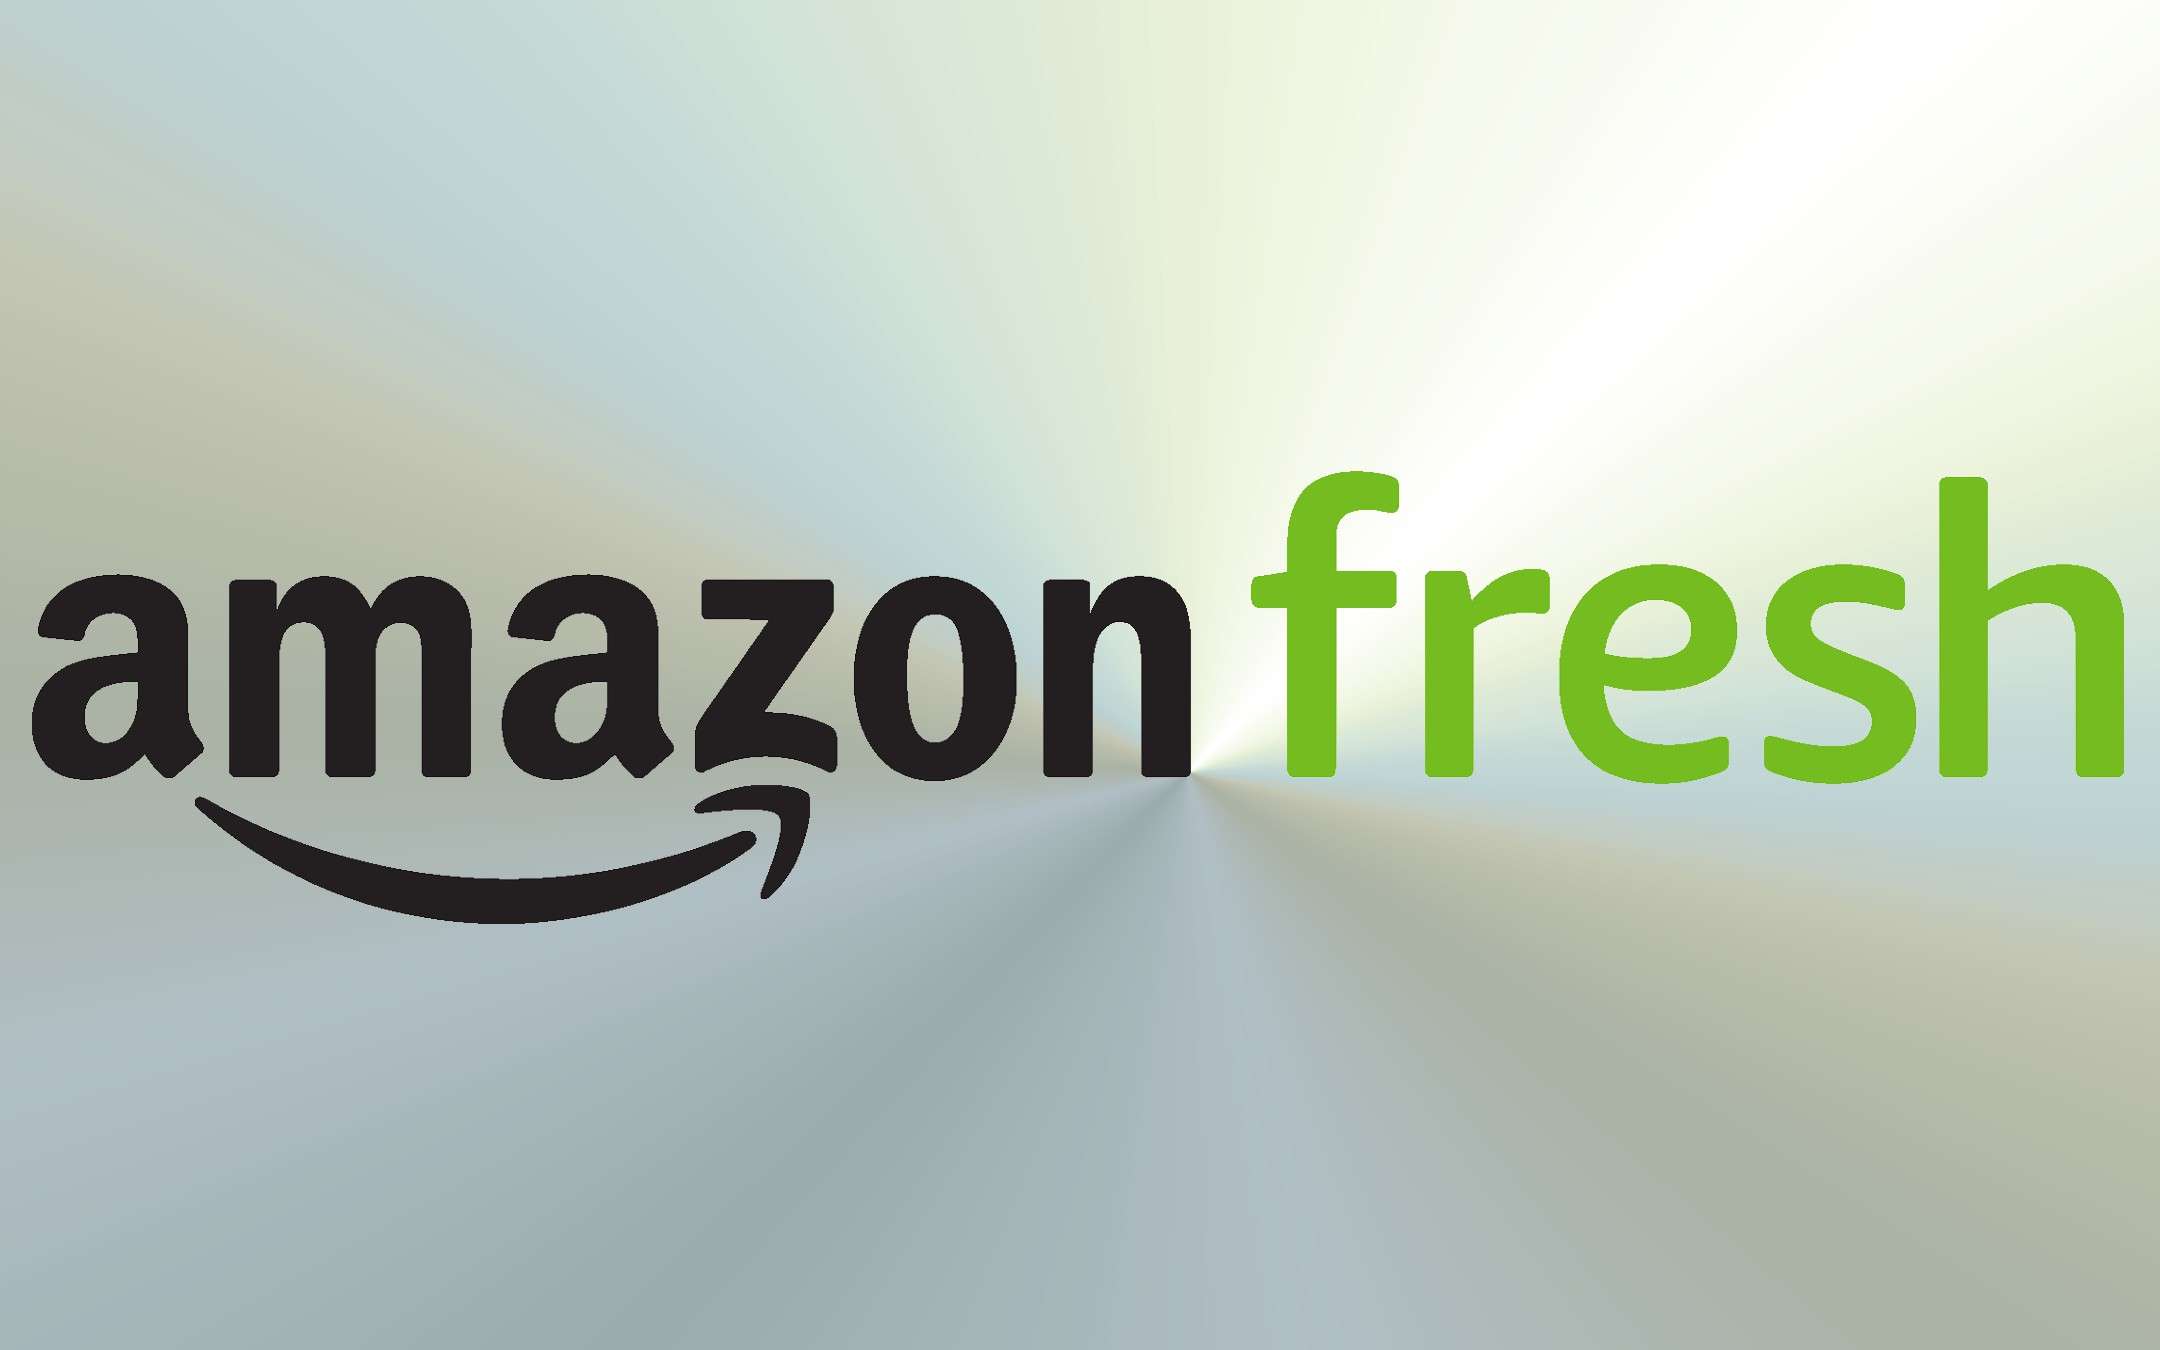 Amazon Fresh also conquers Rome